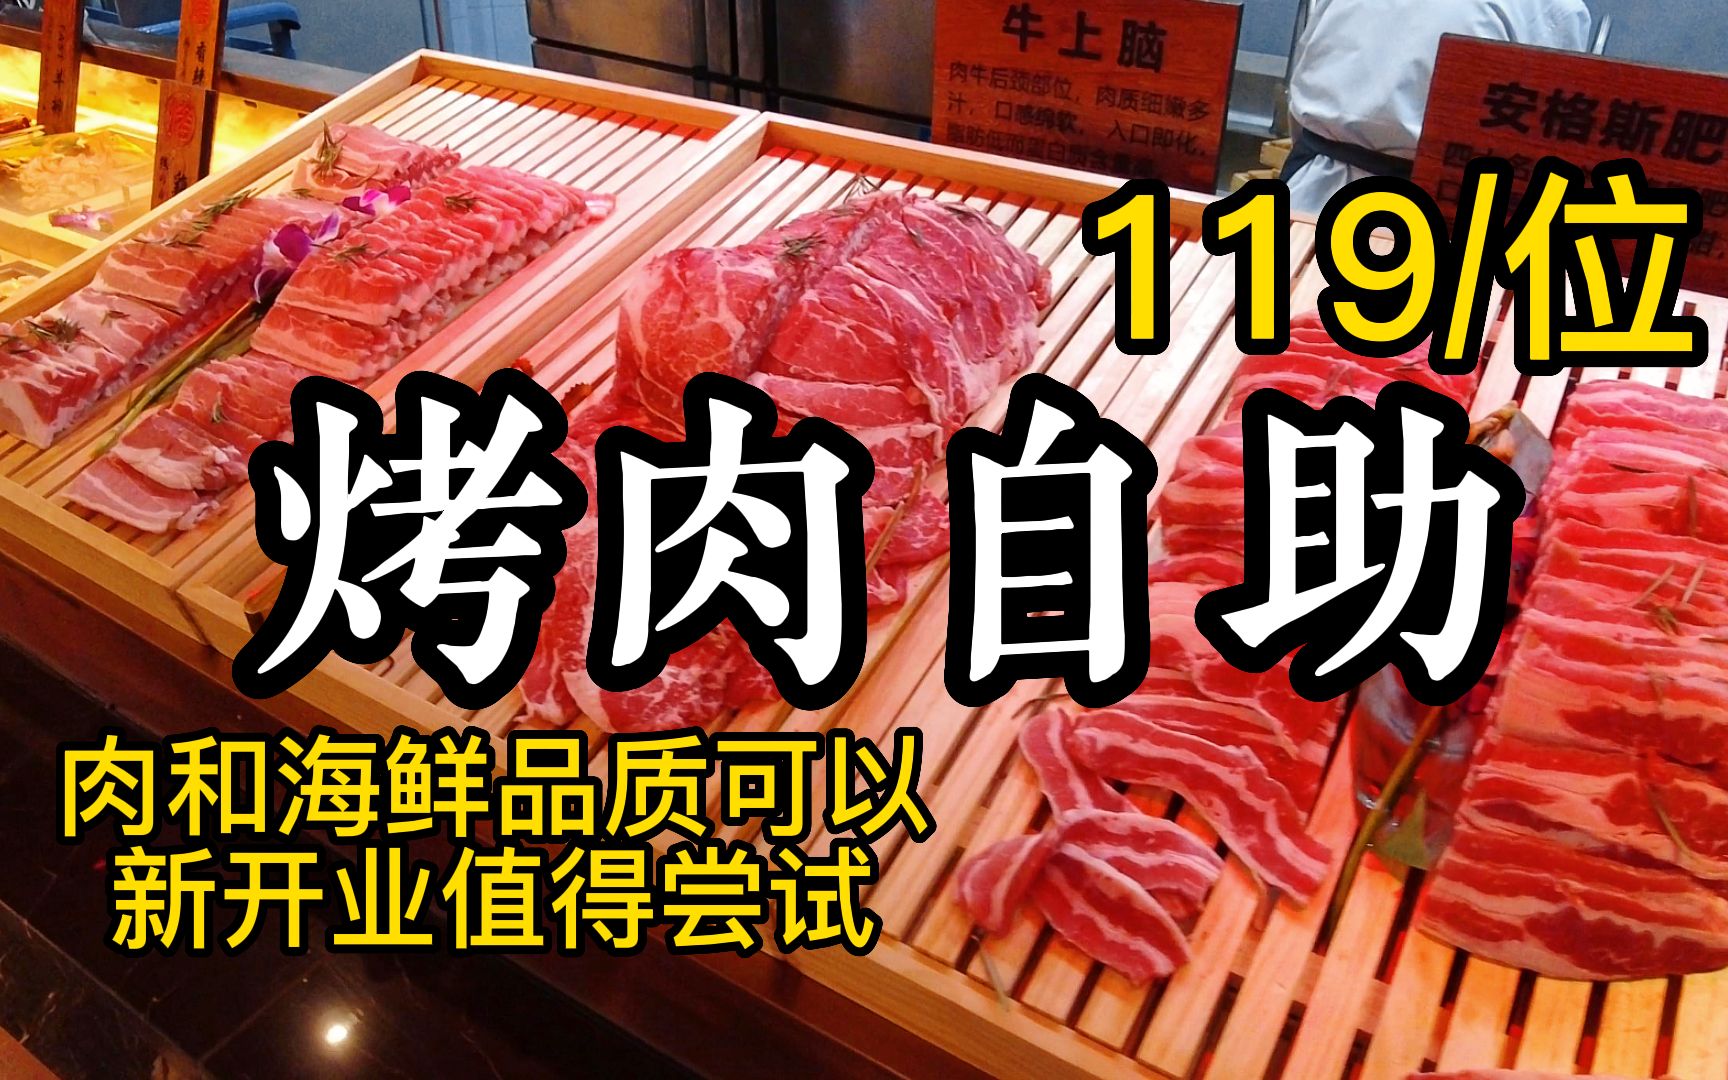 天津新开业烤肉自助119/位，三文鱼刺身和烤鳗鱼无限吃，鲜切肉品质超棒！